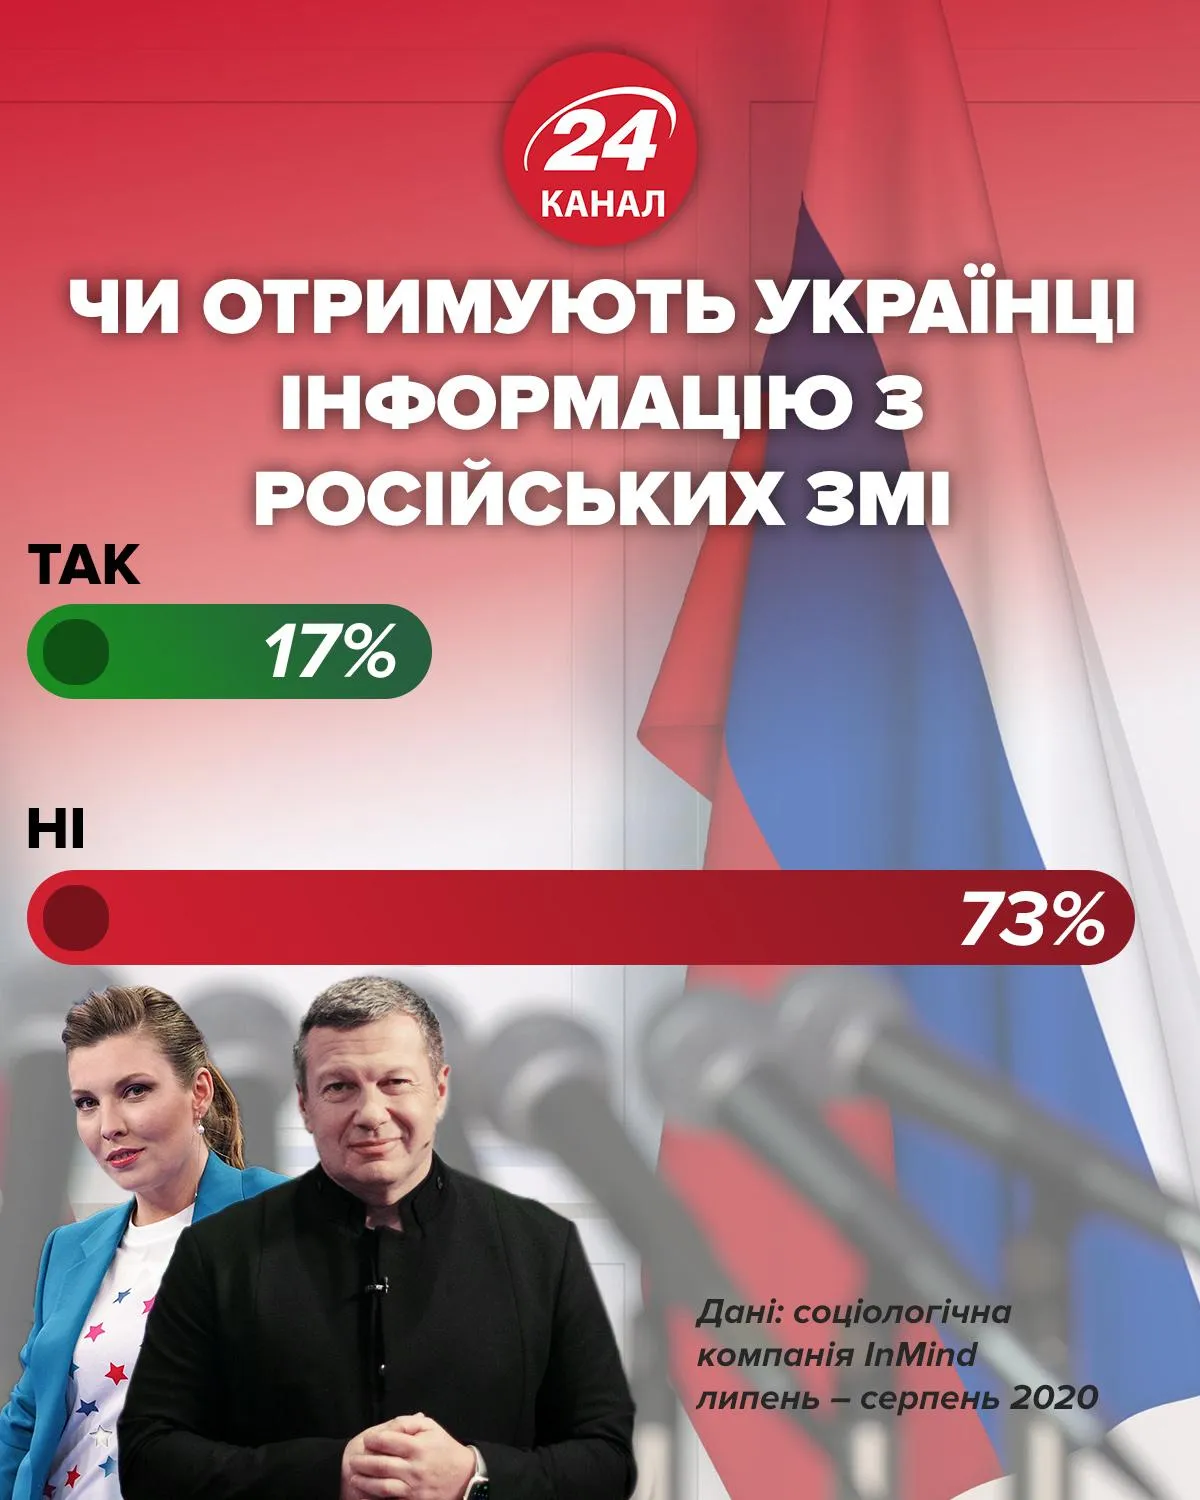 Получают ли украинцы информацию из российских СМИ / Инфографика 24 канала